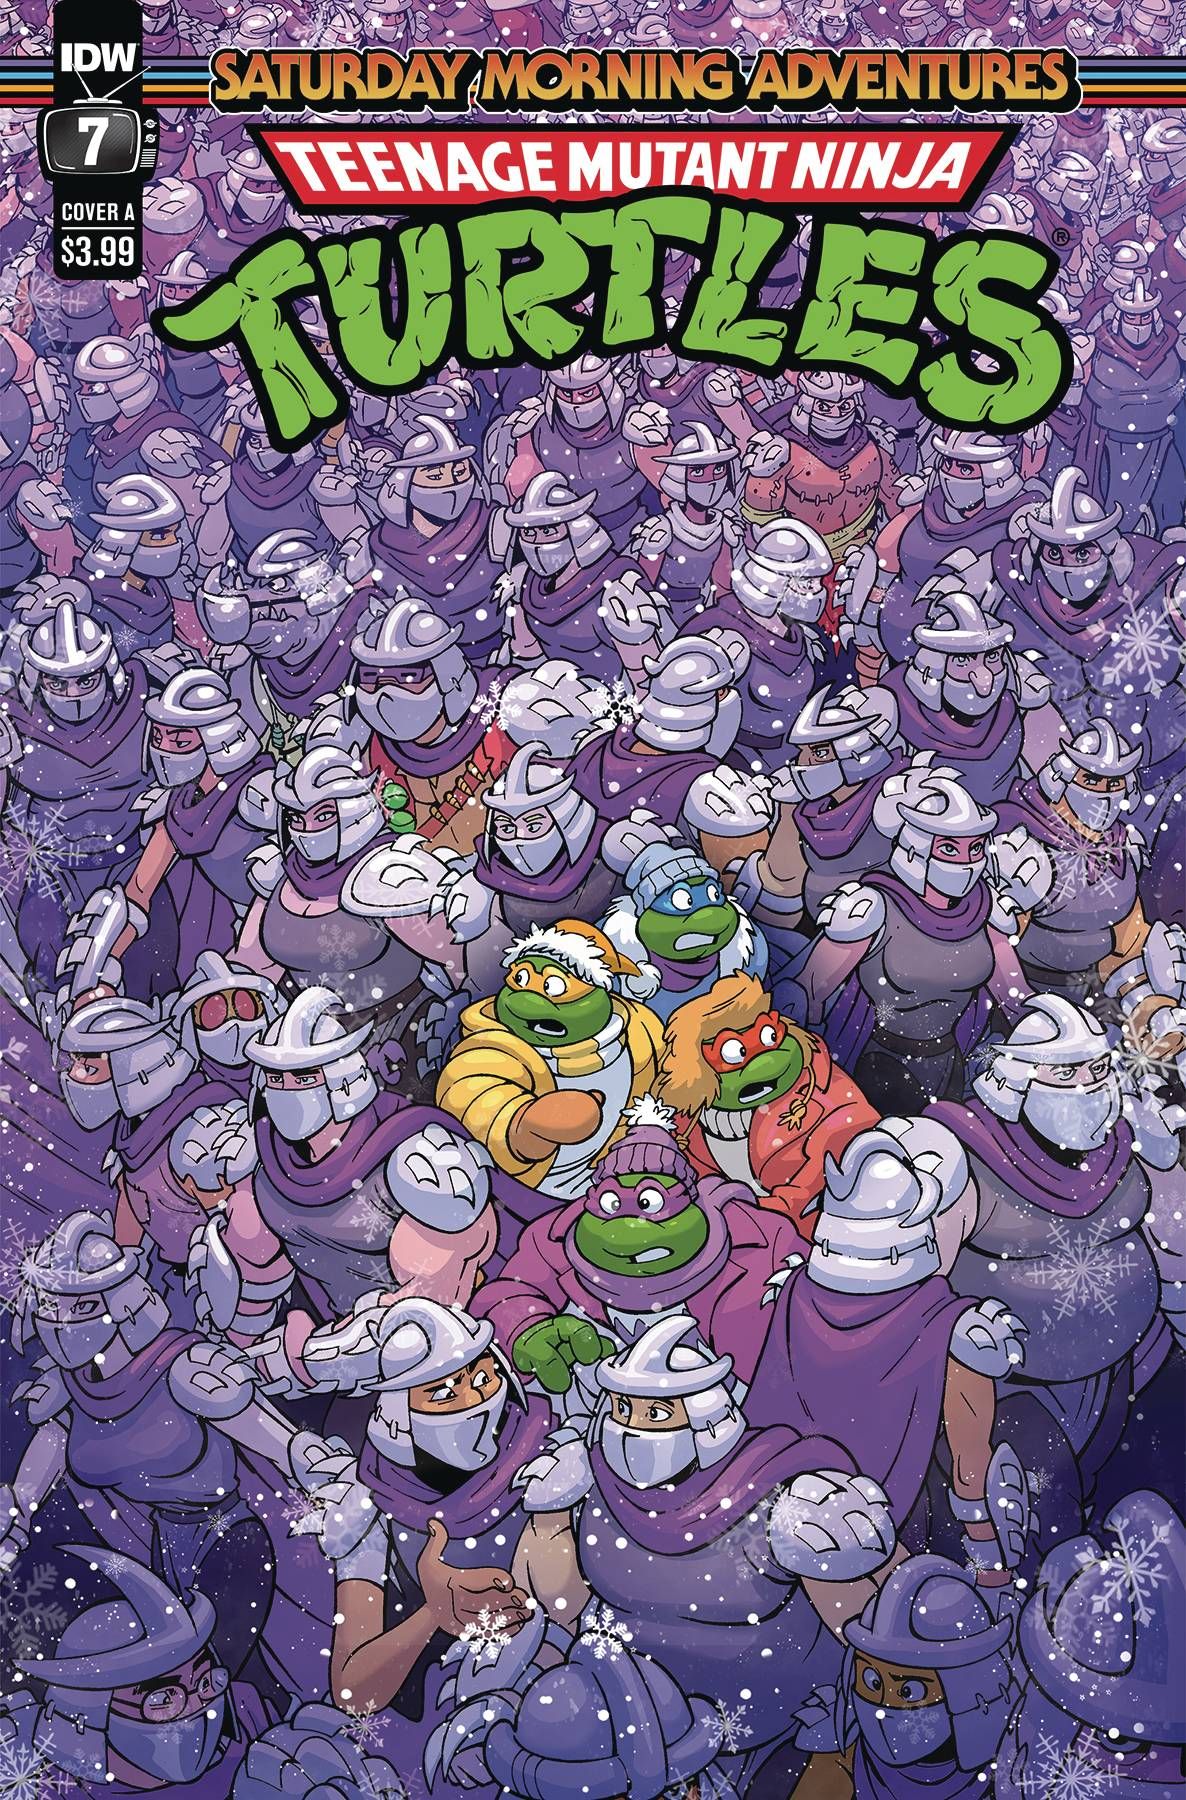 Teenage Mutant Ninja Turtles: Saturday Morning Adventures #7 Comic